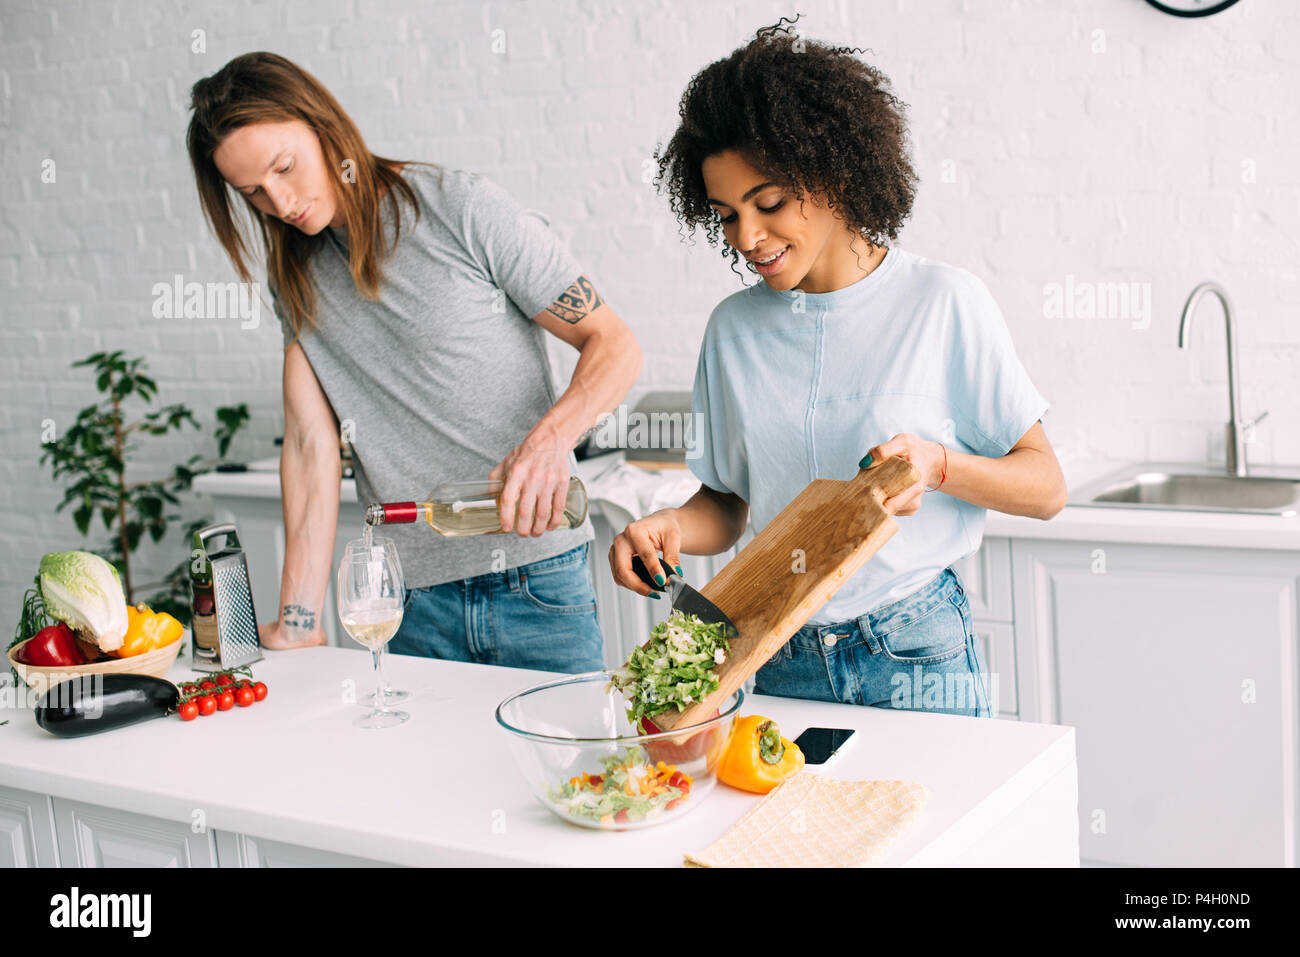 Junge afrikanische amerikanische Frau kochen Salat und Freund gießen Weißwein in Glas Stockfoto